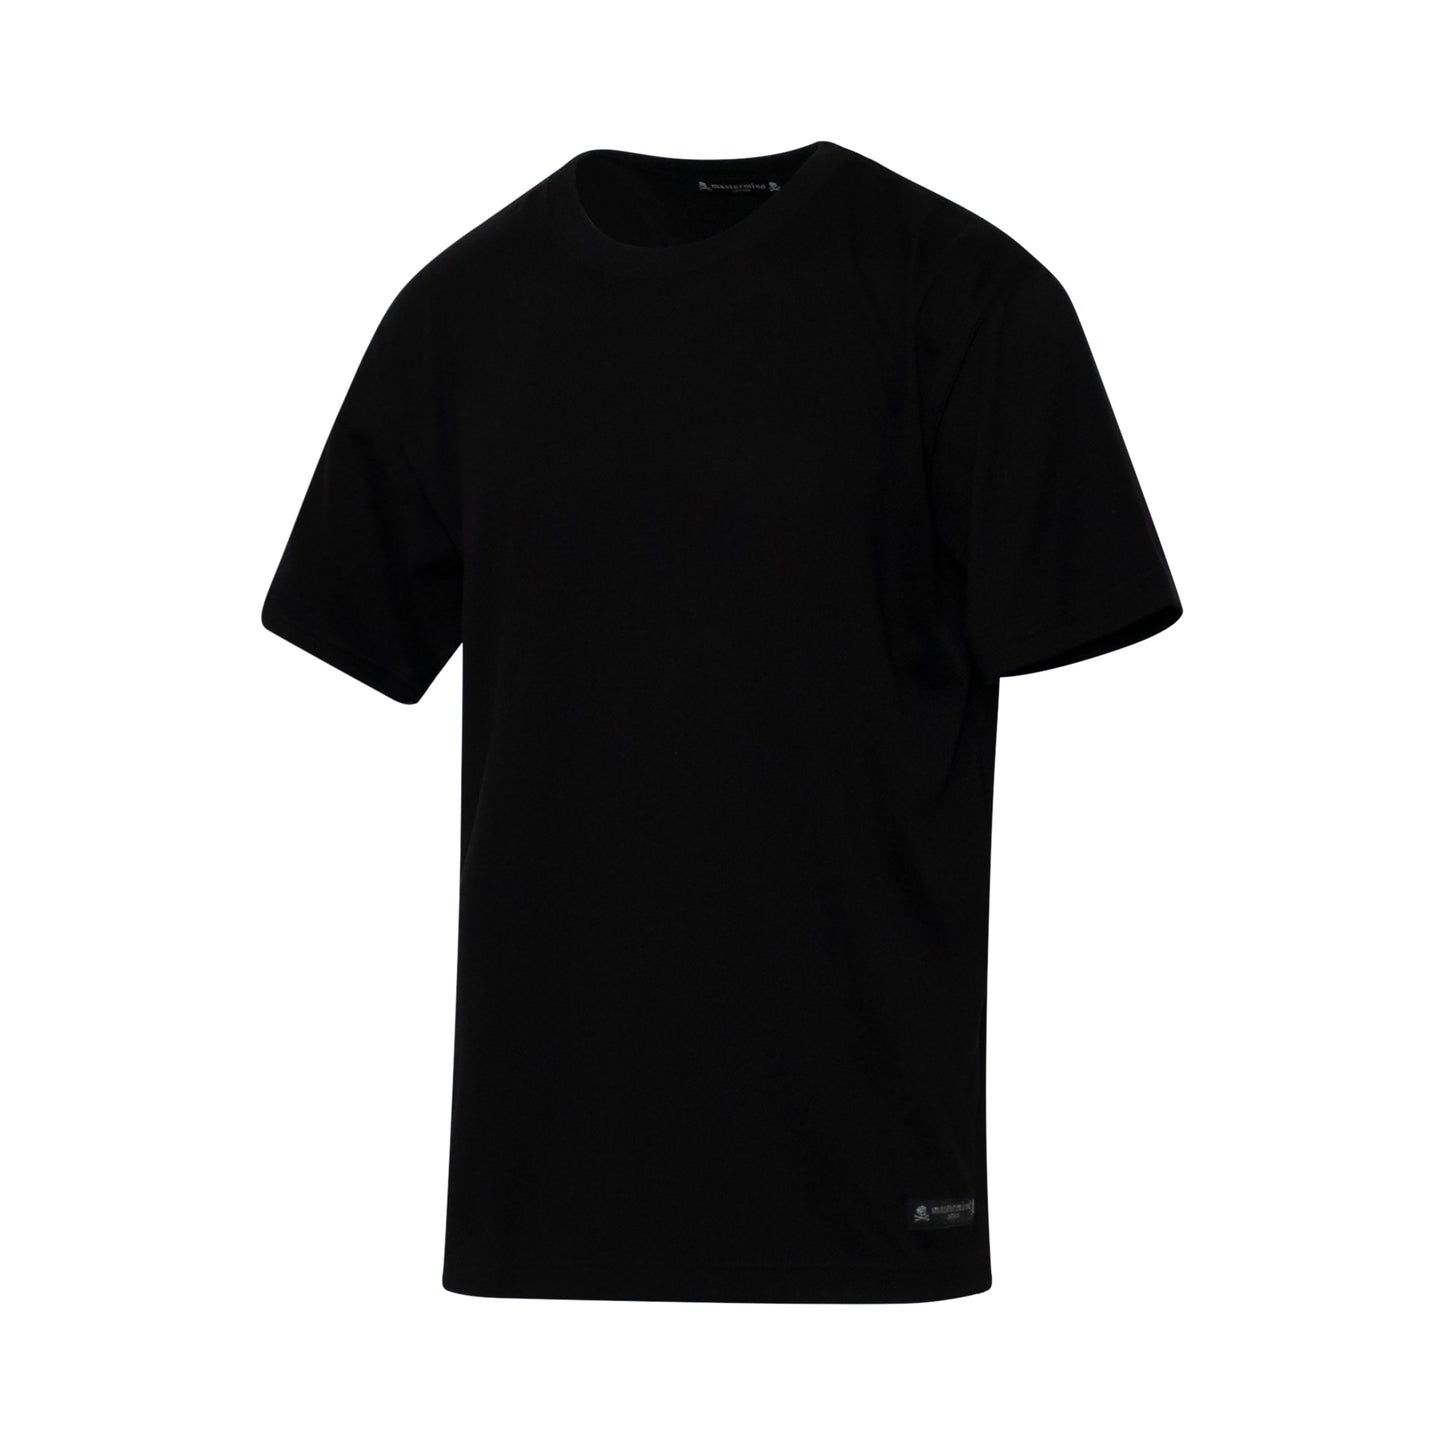 Mastermind Japan Logo T-Shirt in Black/White